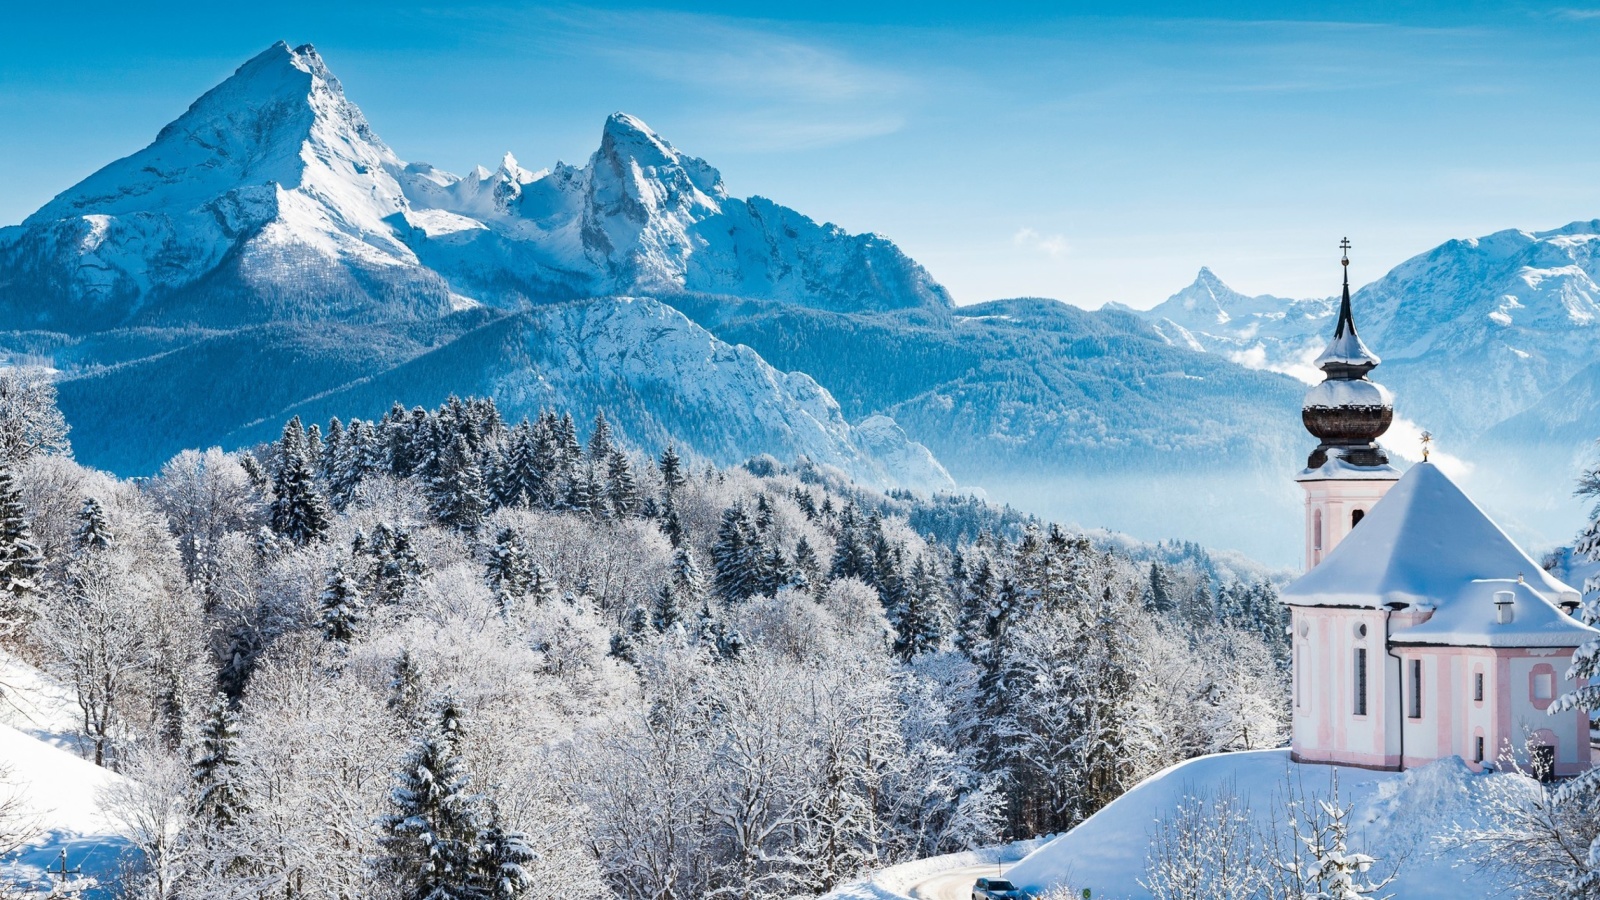 Das Bavaria under Snow Wallpaper 1600x900